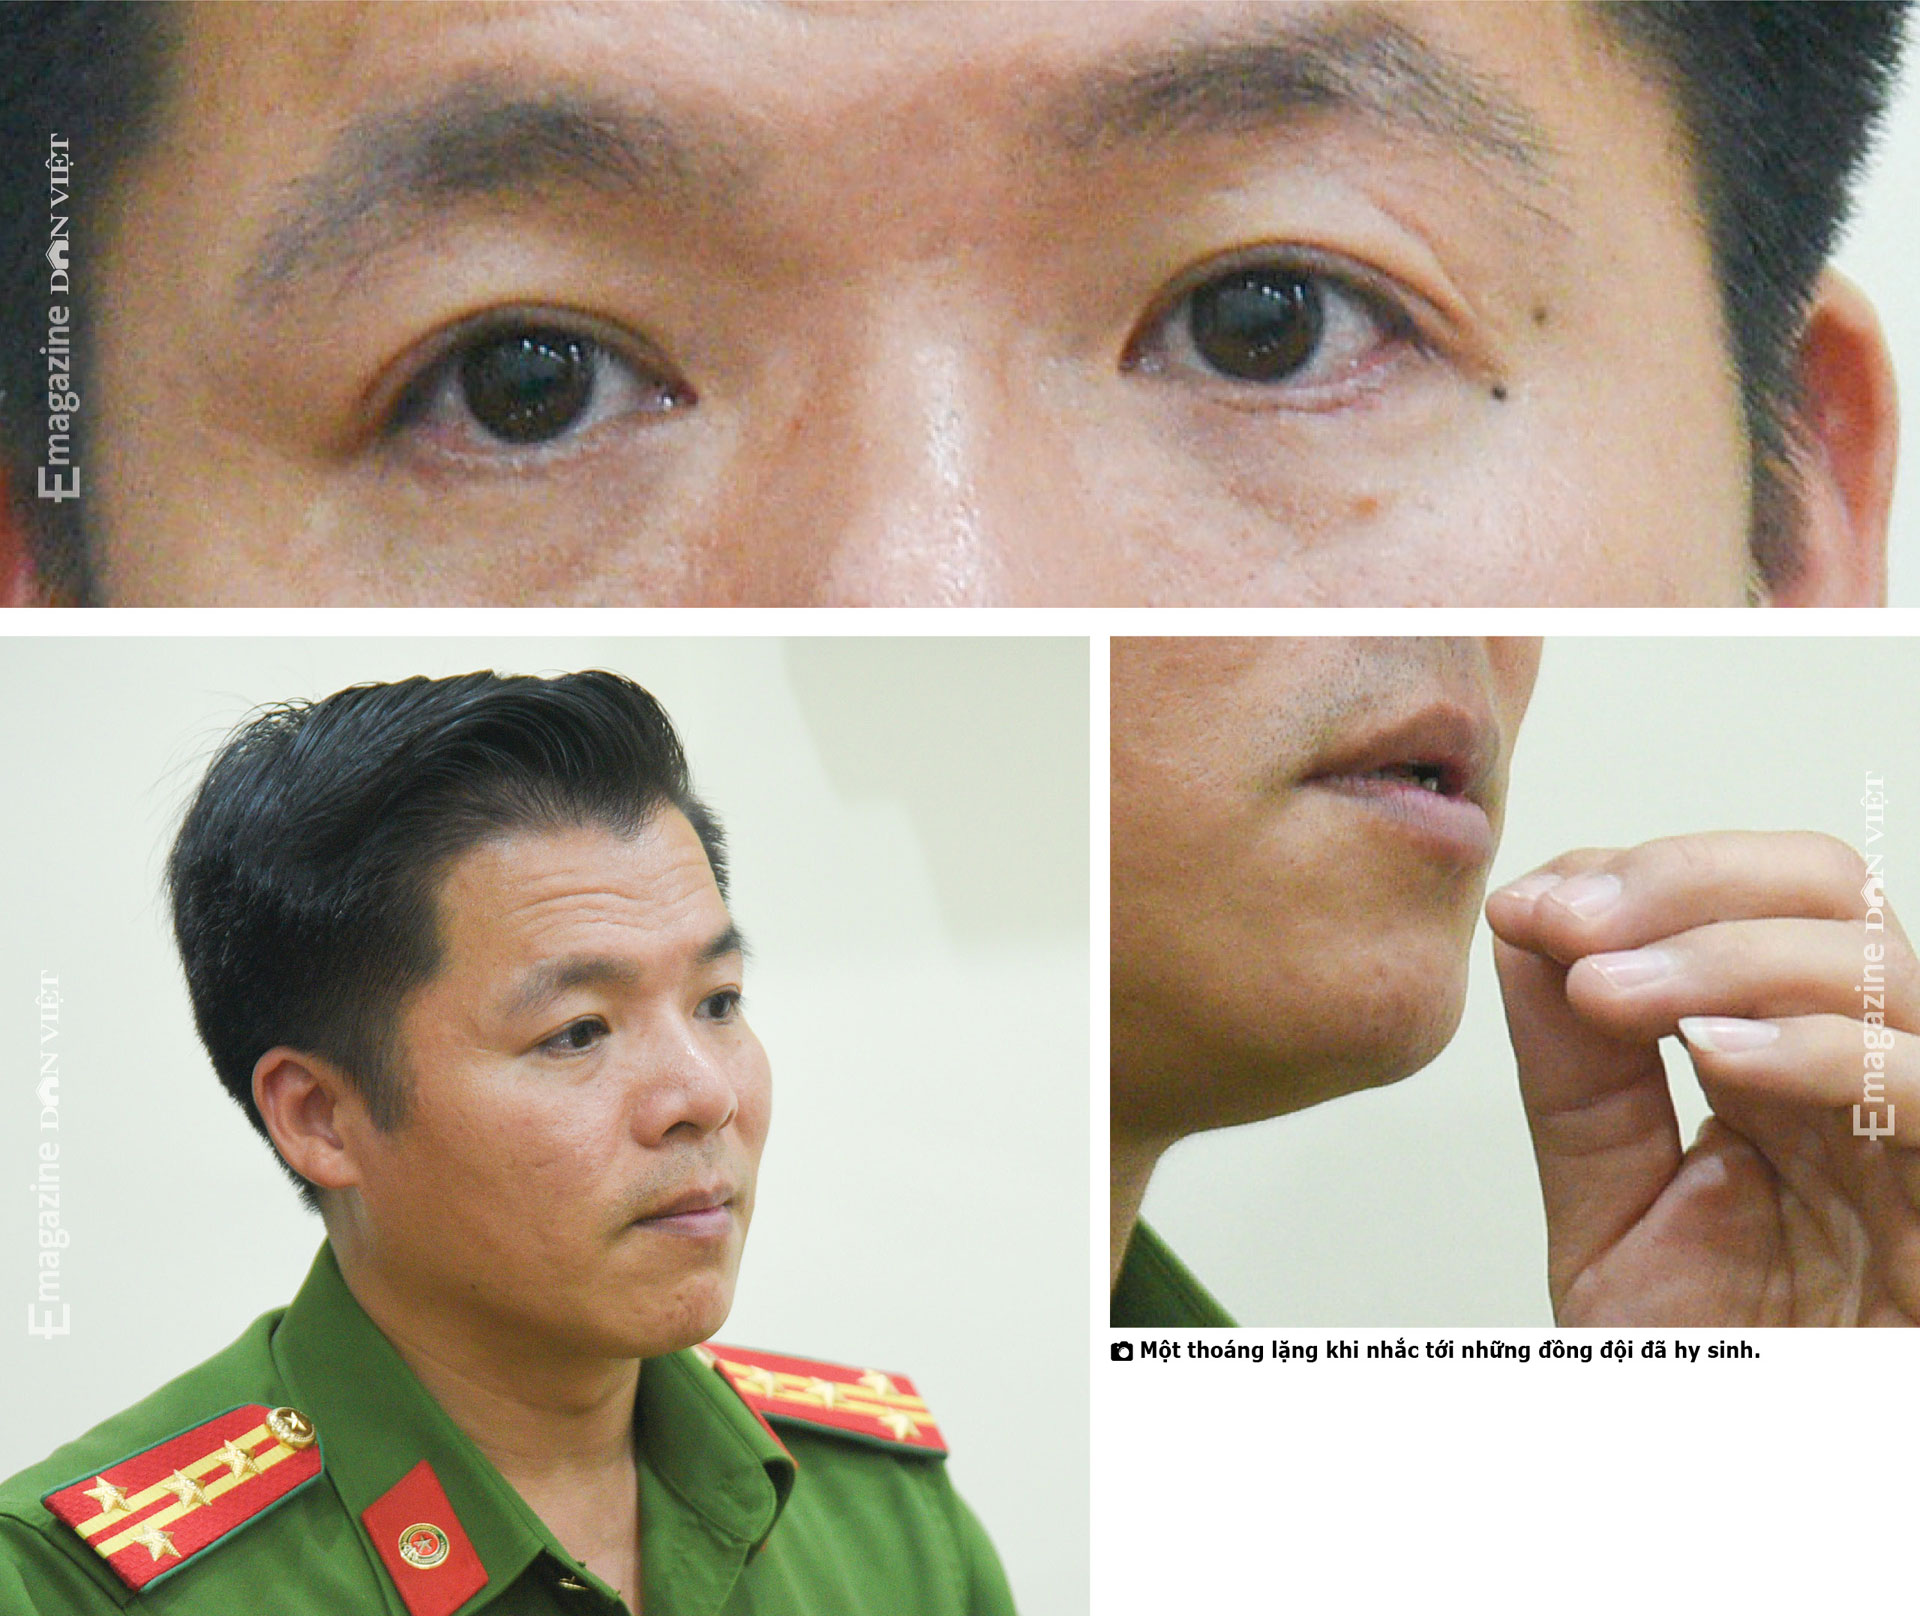 Đại tá, PGS.TS Nguyễn Minh Khương: Có lúc muốn làm siêu nhân để không phải bất lực thấy người gặp nạn mà không cứu được - Ảnh 19.